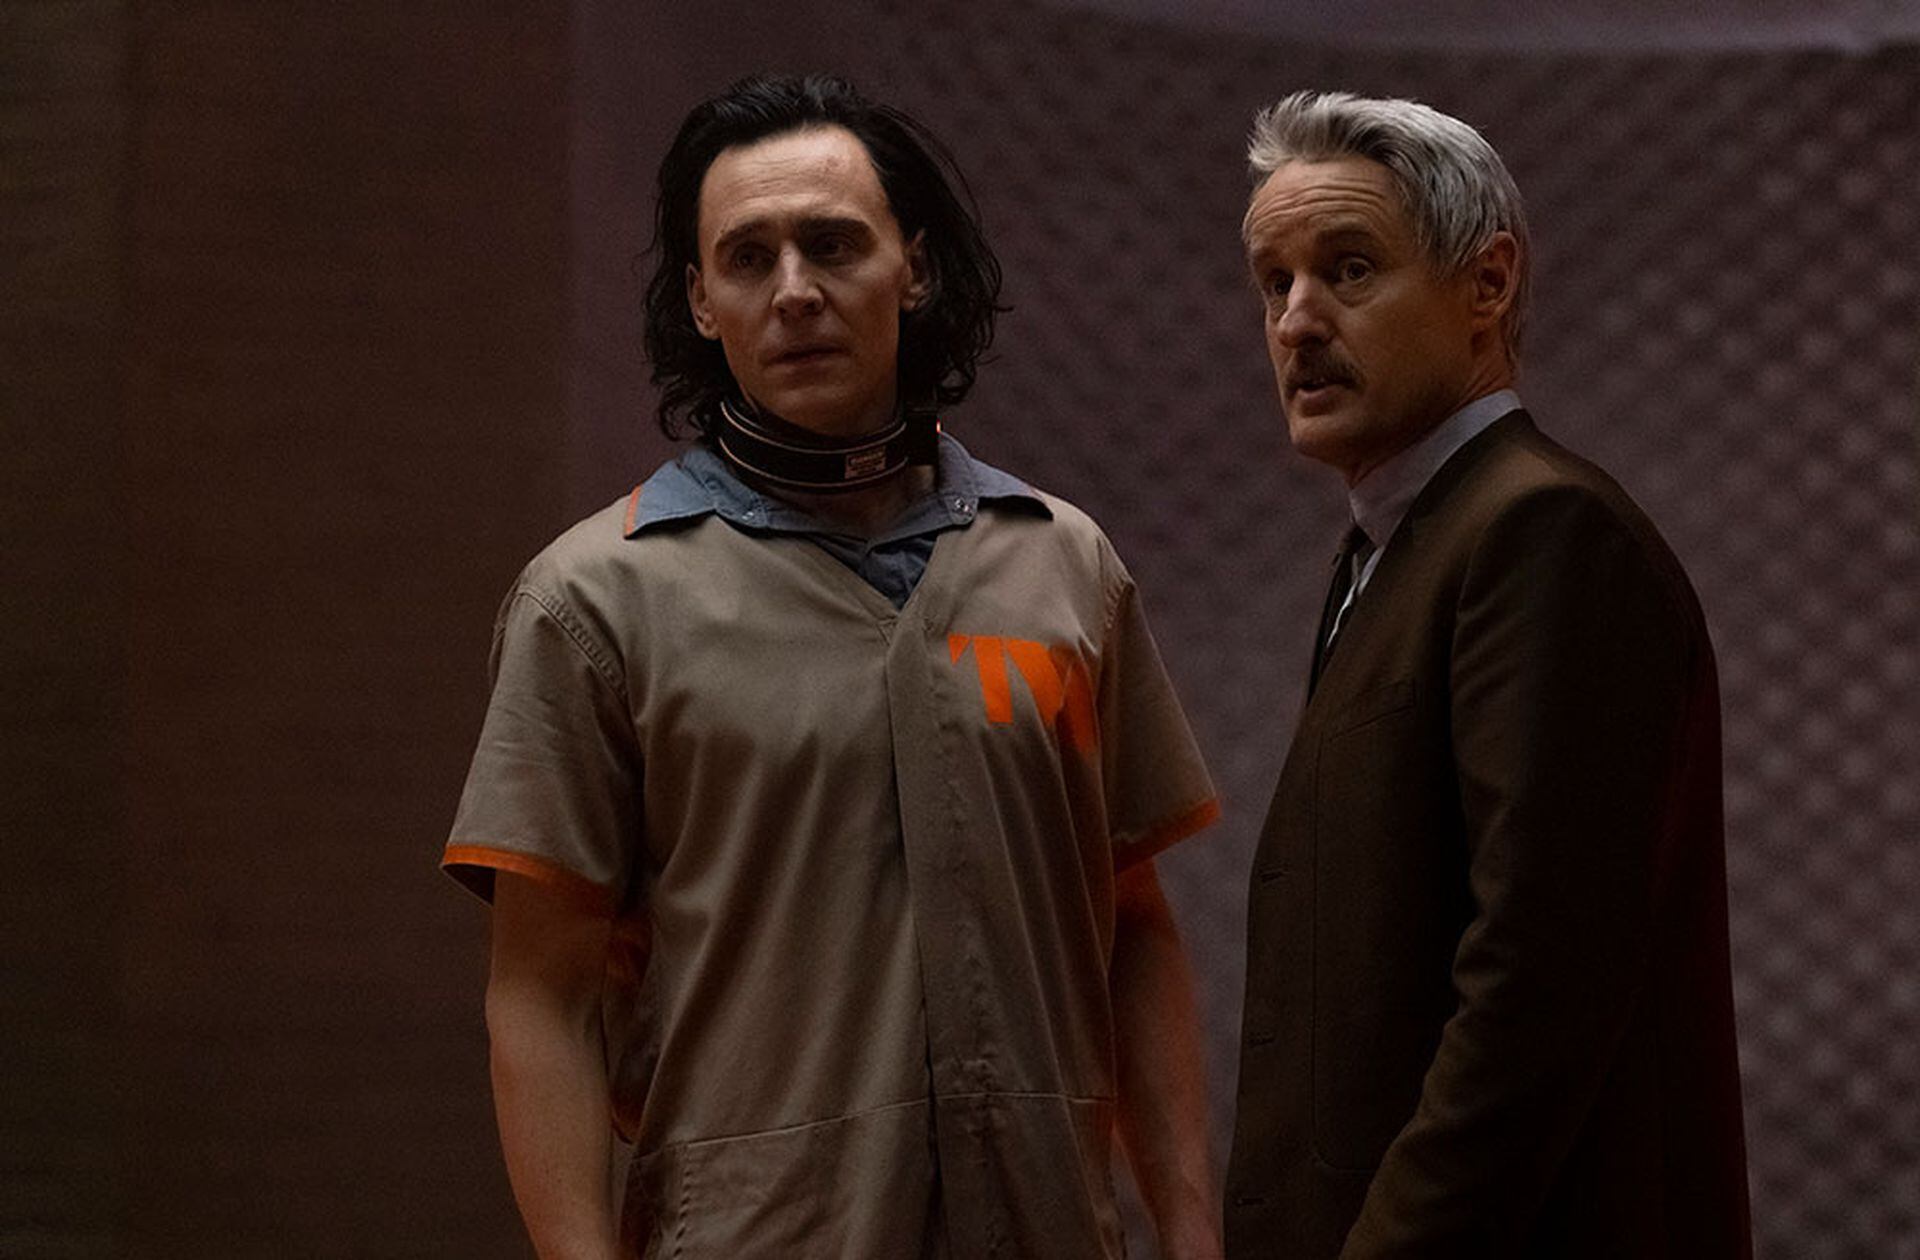 Tom Hiddleston (aquí junto a Owen Wilson) recupera a su Loki, antagonista de Los Vengadores, en clave de comedia para la serie original de Disney+, una de las apuestas fuertes de Marvel para la temporada